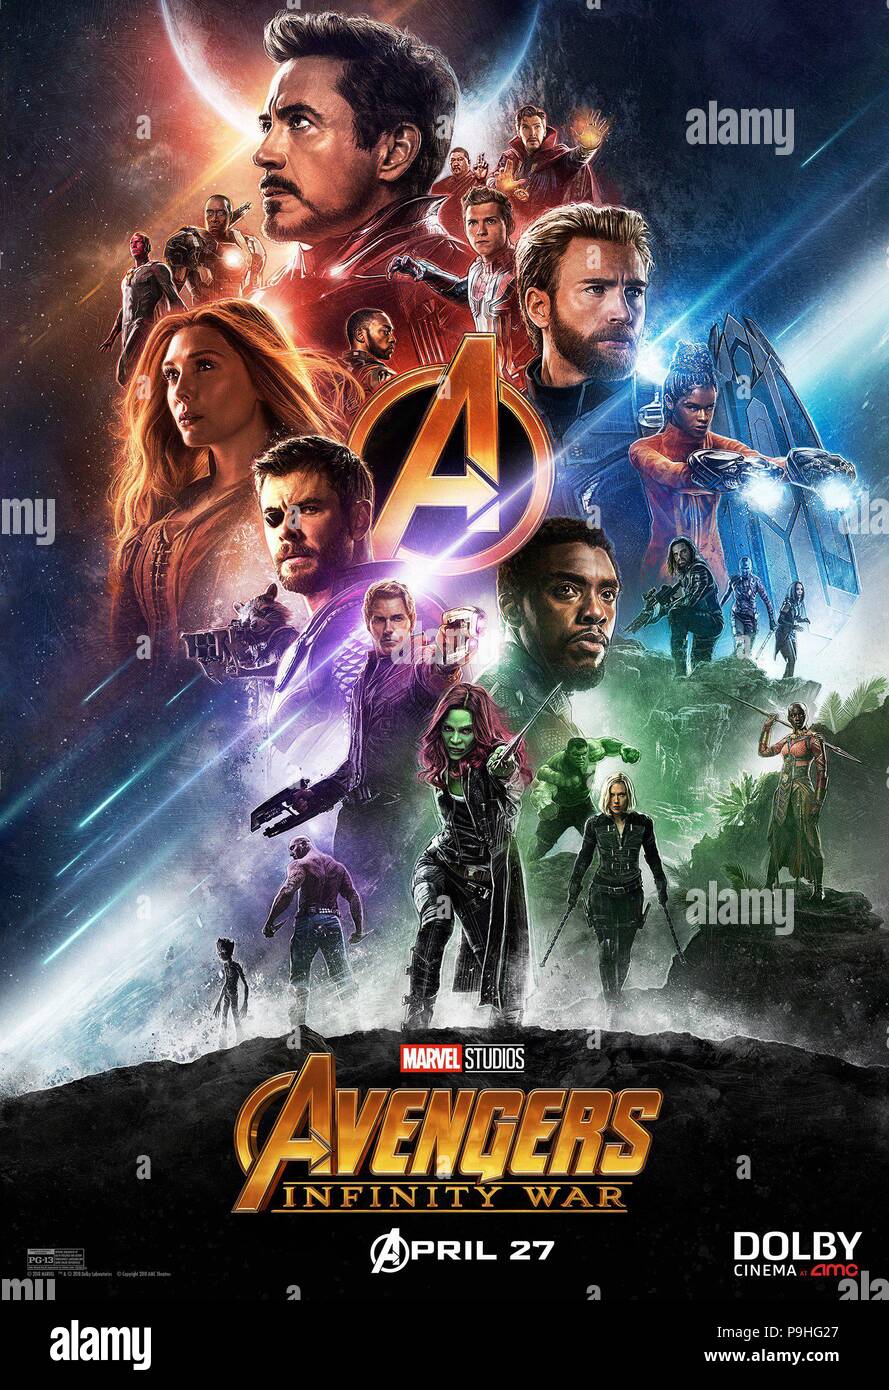 RELEASE DATE: Mai 4, 2018 Title: Avengers: Infinity Krieg STUDIO: Marvel  Studios Regisseur: Anthony Russo, Joe Russo PLOT: Die rächer und ihre  Verbündeten müssen bereit sein, alle in einem Versuch, die leistungsstarke